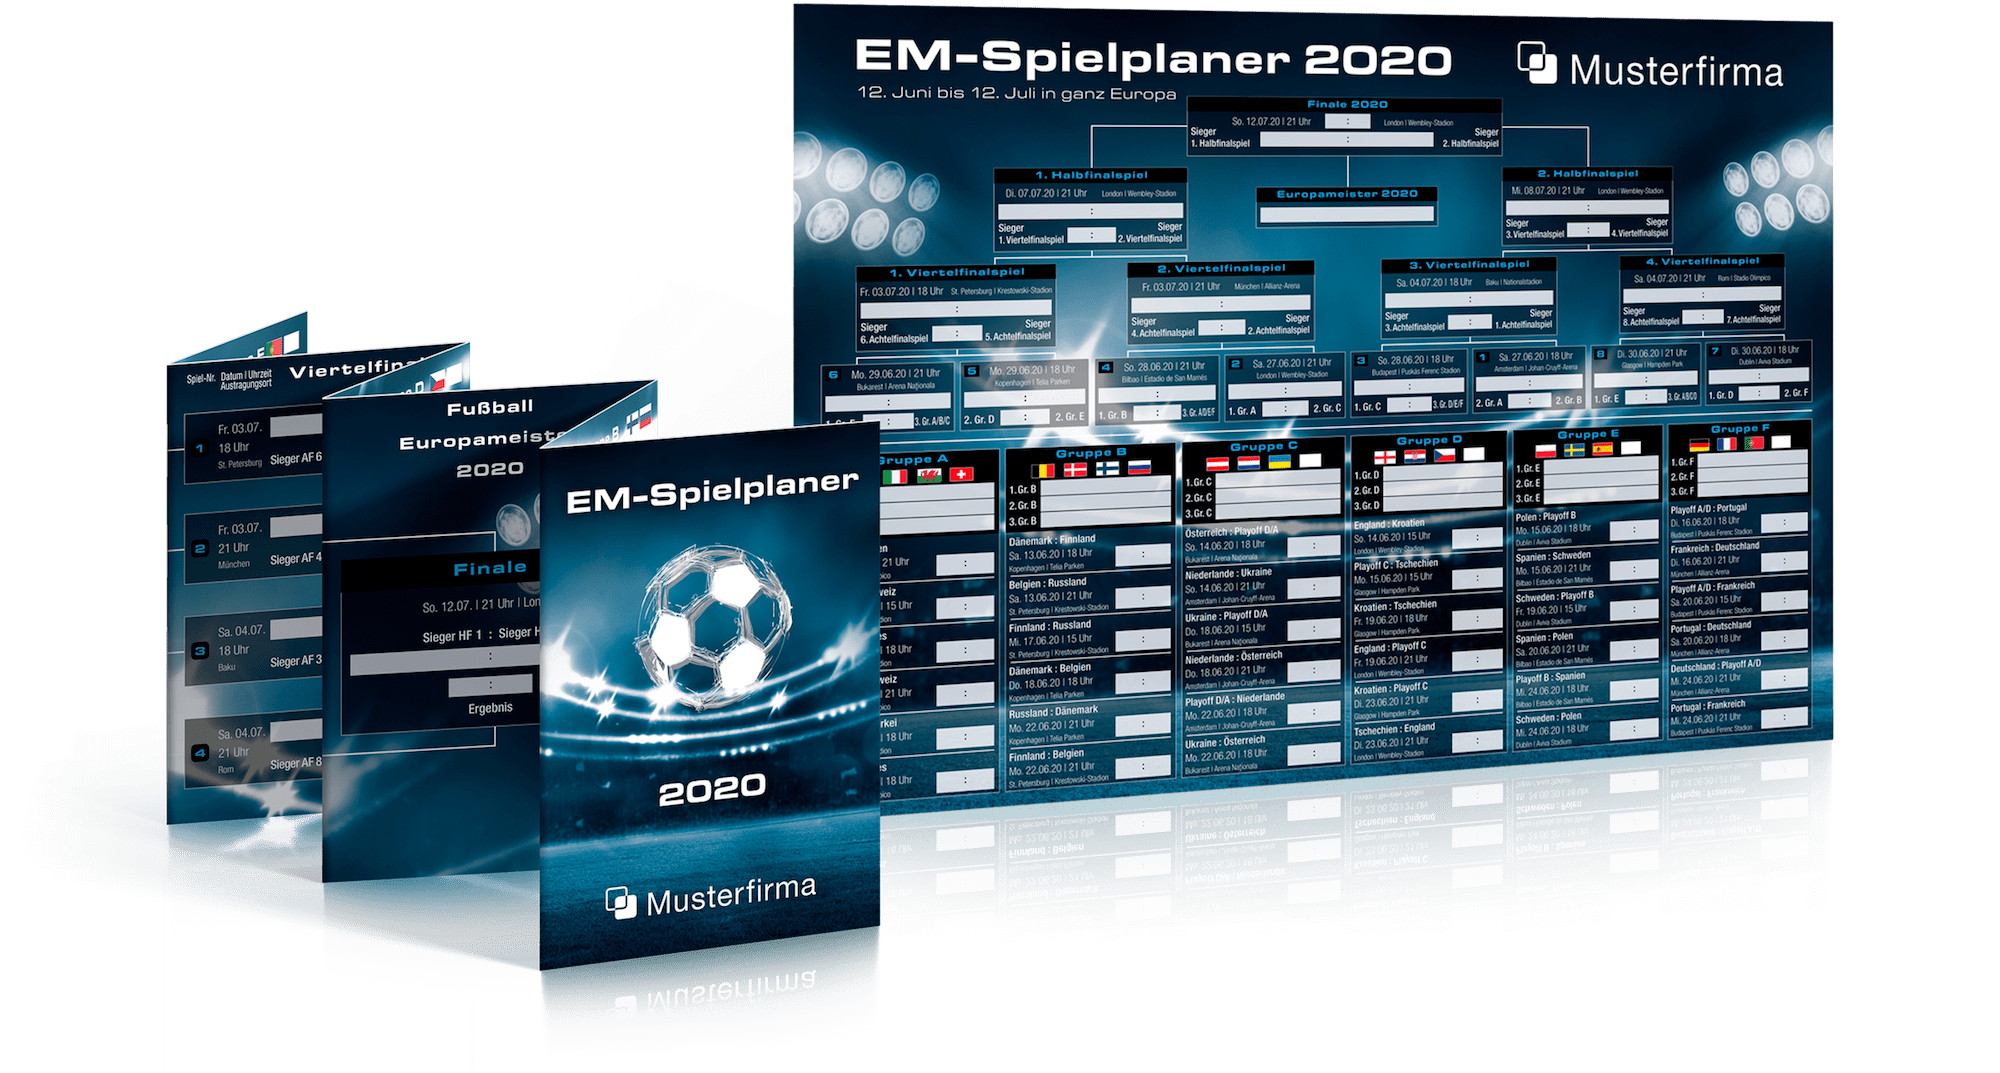 Abbildung des Fußball EM-Faltplaner und Fußball EM-Wandplaner in unserem dunklen Design.